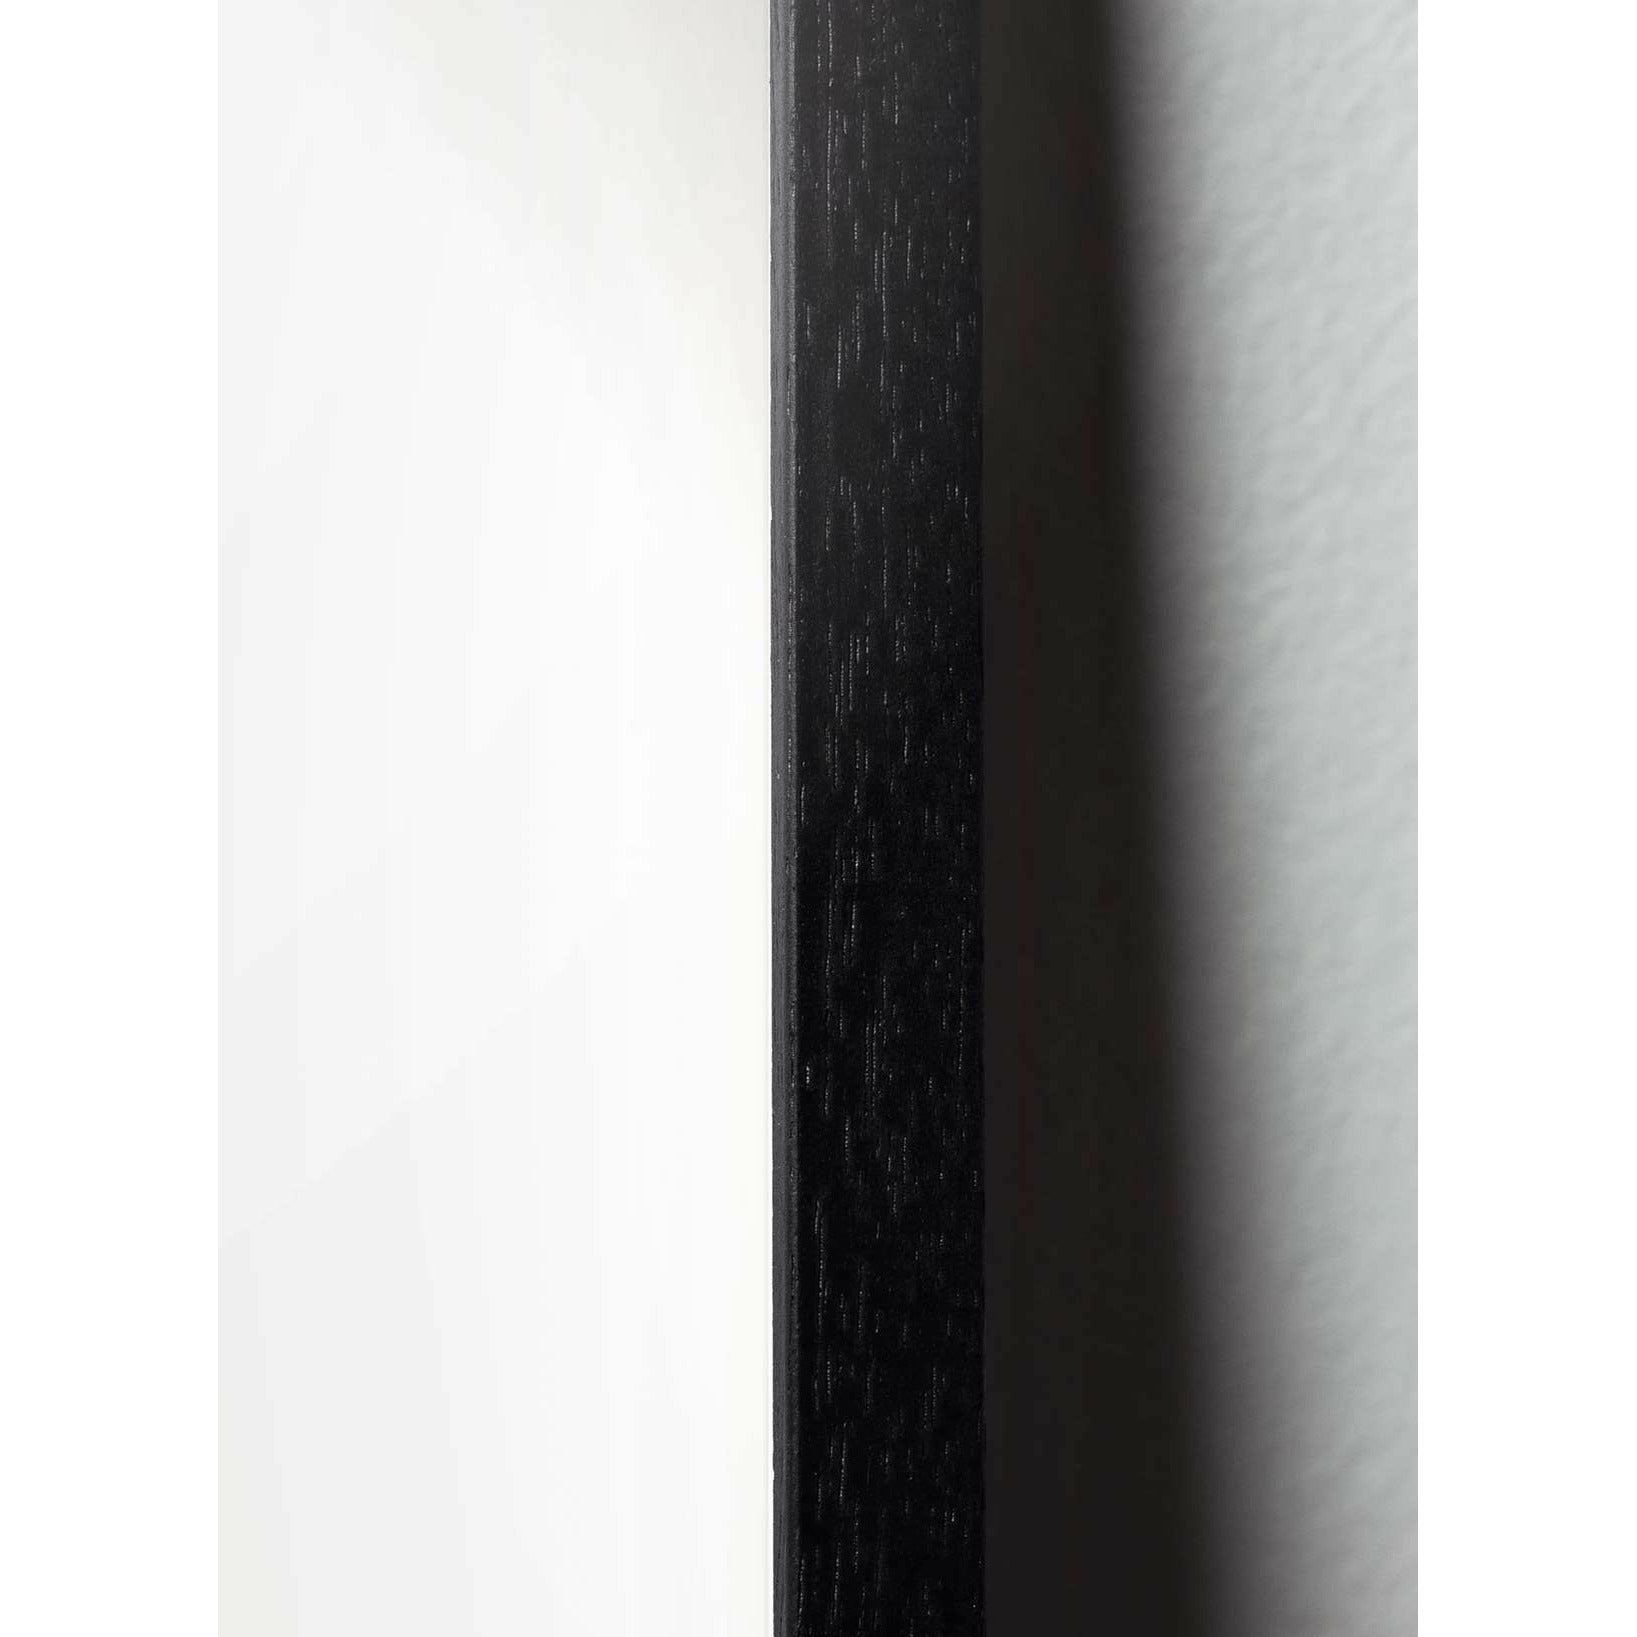 Brainchild Lumikynän linjajuliste, runko mustalla lakatulla puulla 30x40 cm, valkoinen tausta